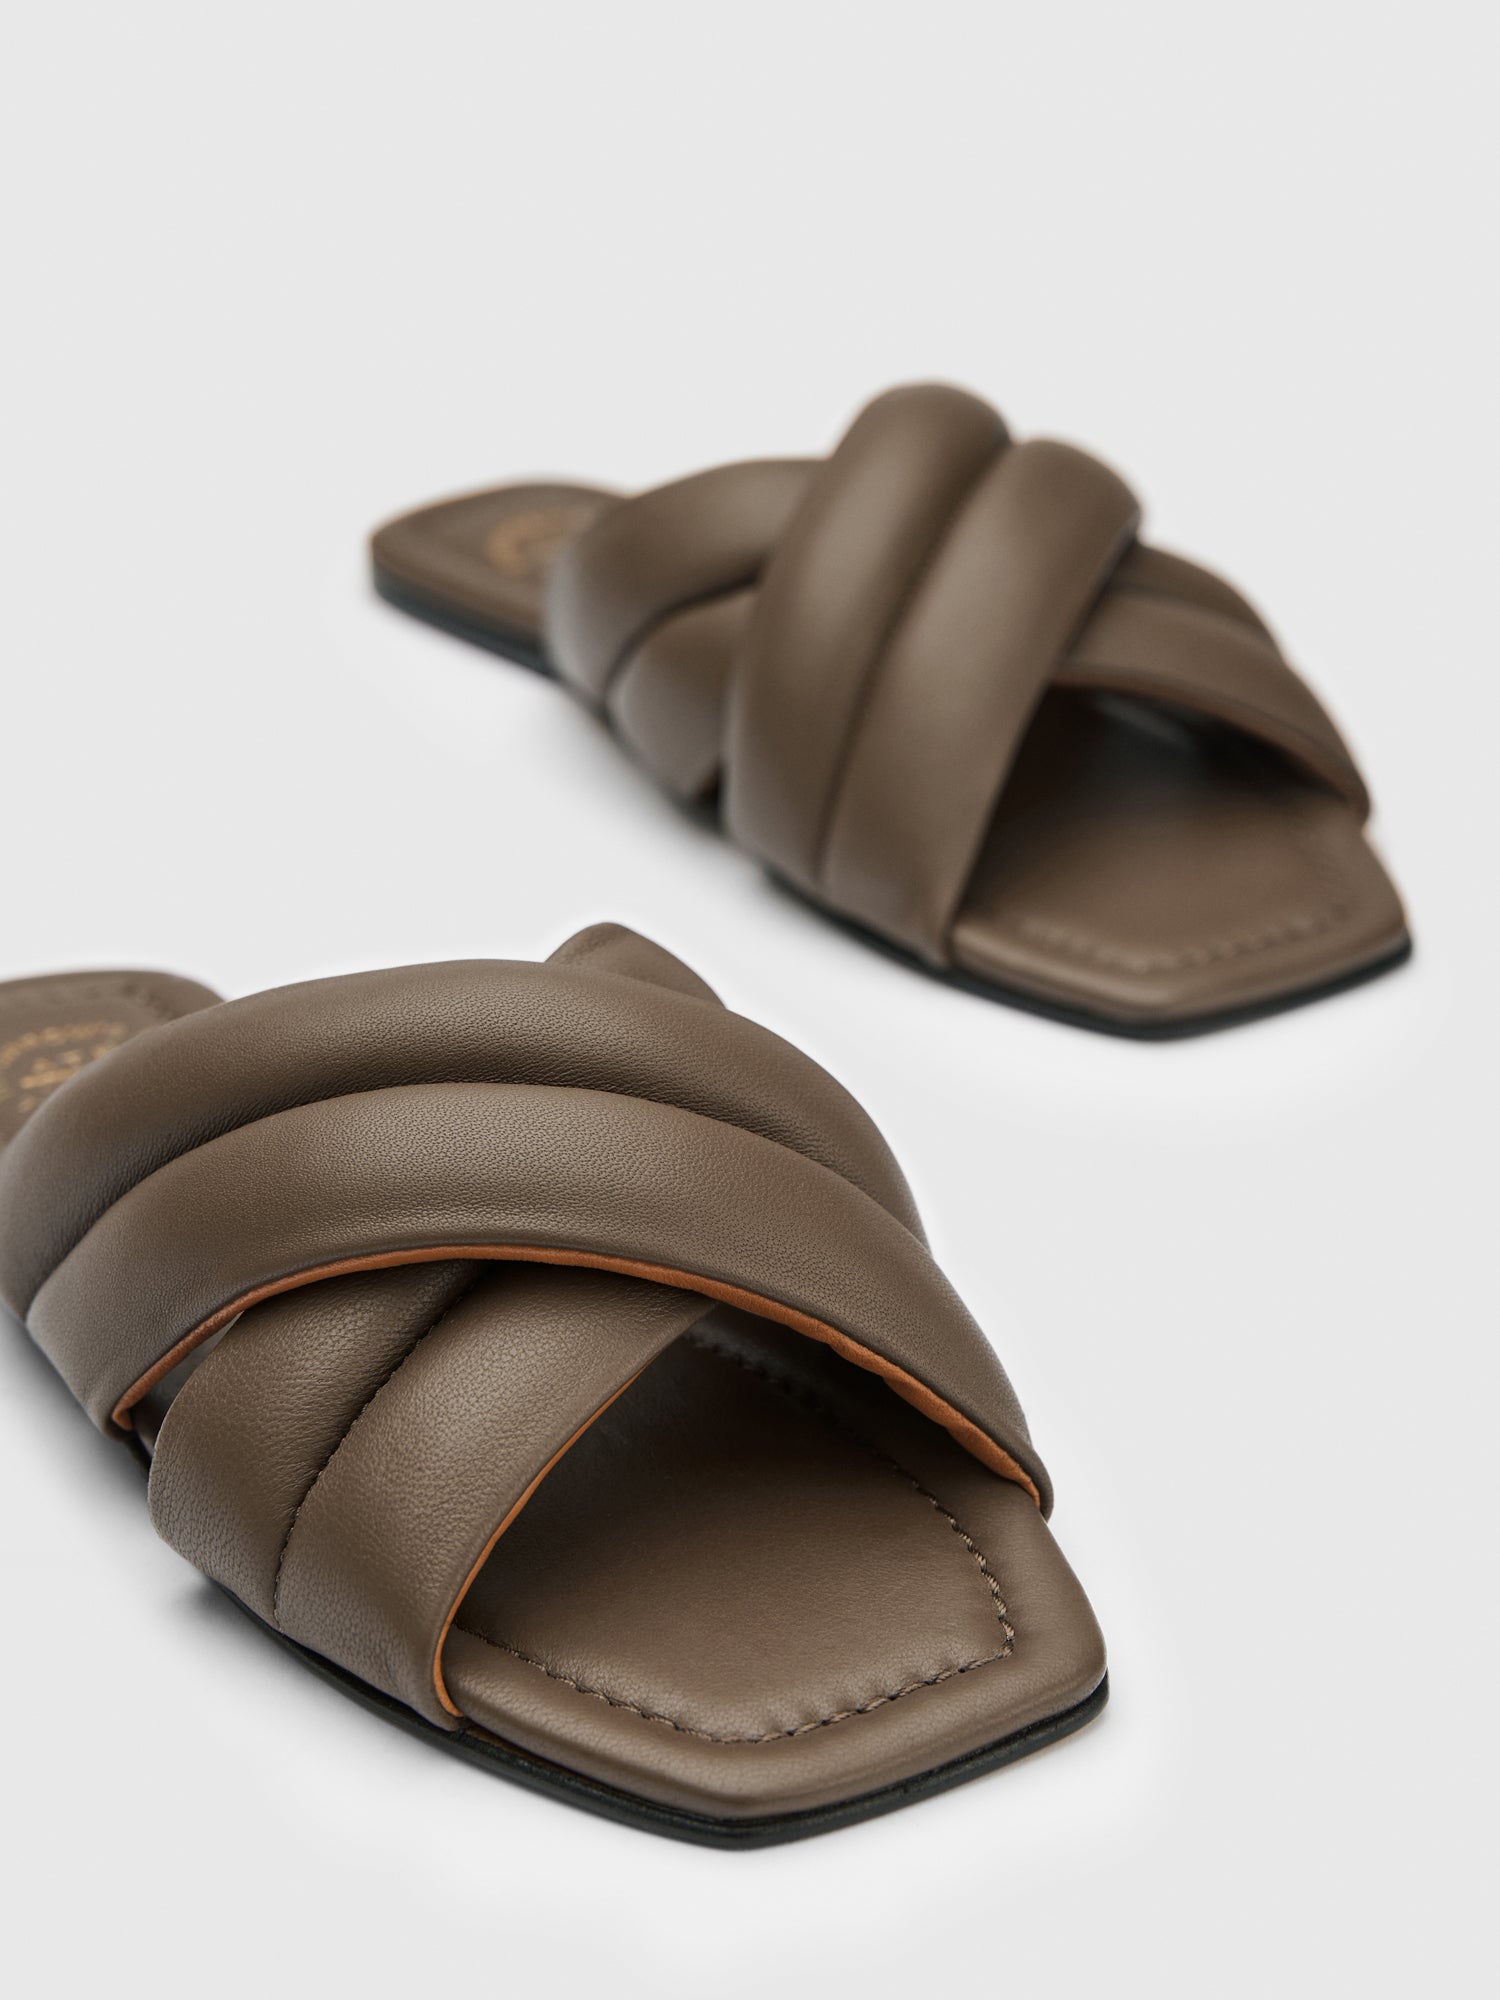 Cotti Khaki Brown Nappa Flat sandals